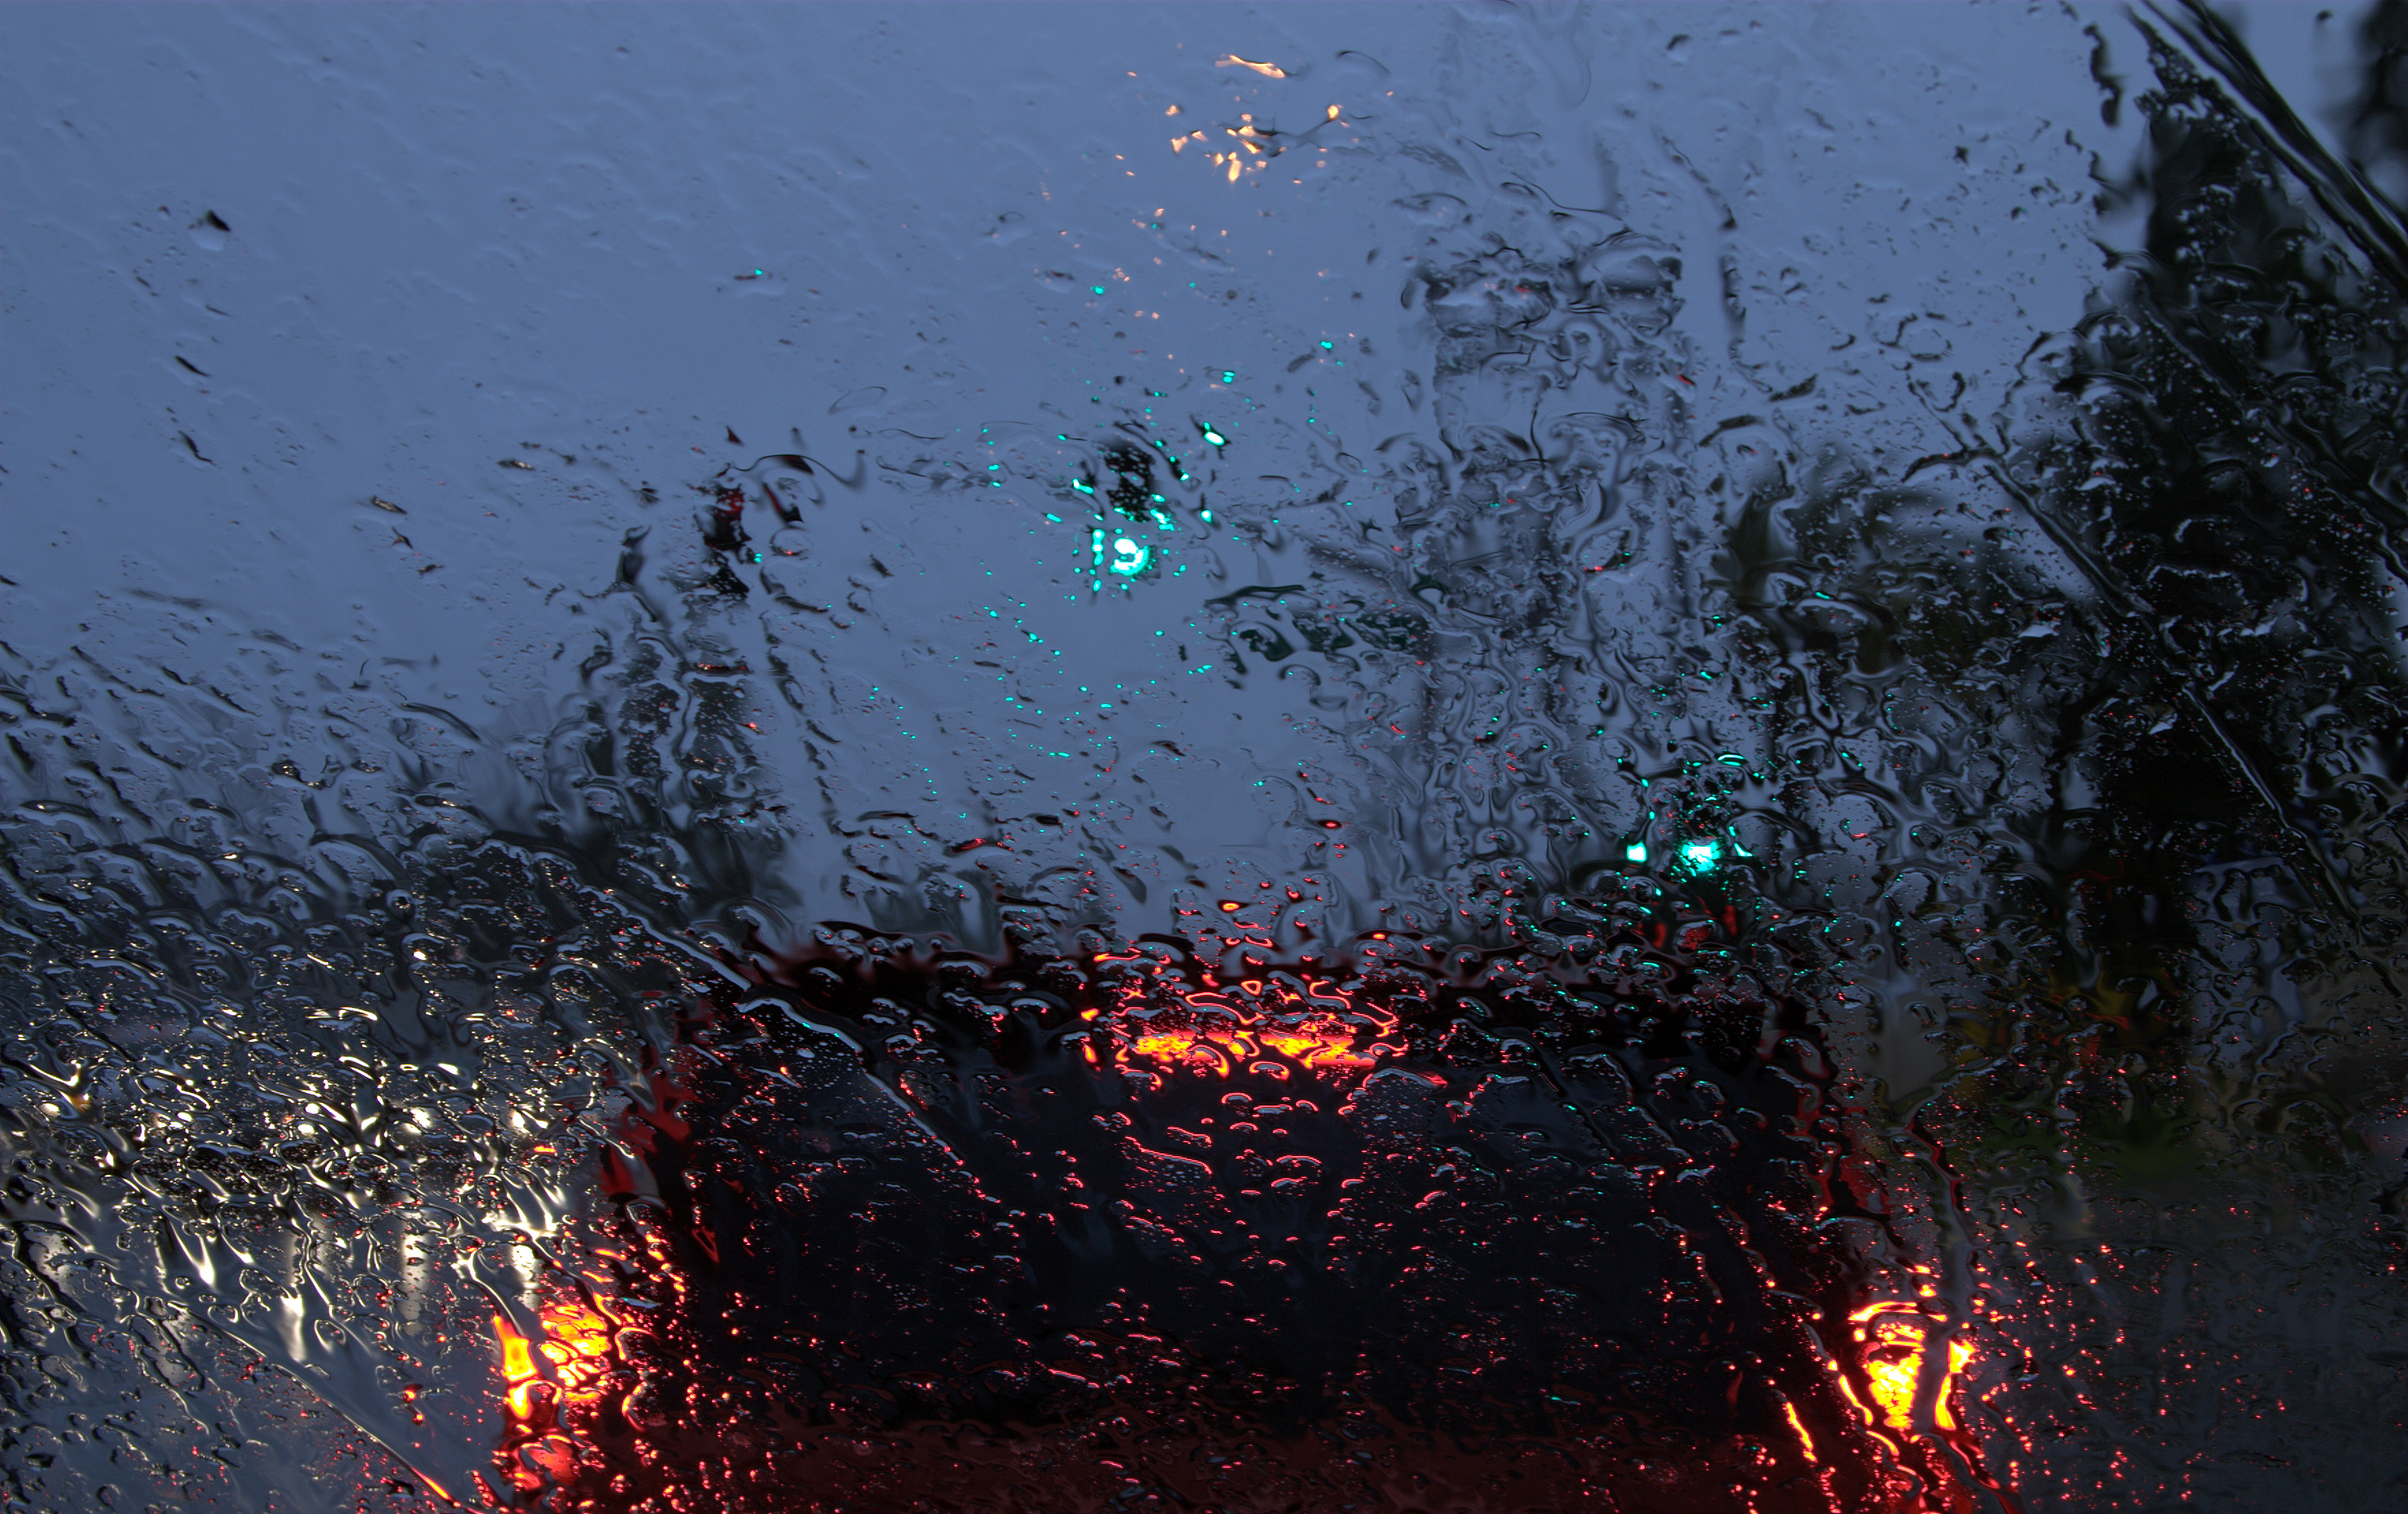 Кипящий дождь. Дождь. Обои дождь. Капли дождя на стекле. Мокрое стекло.